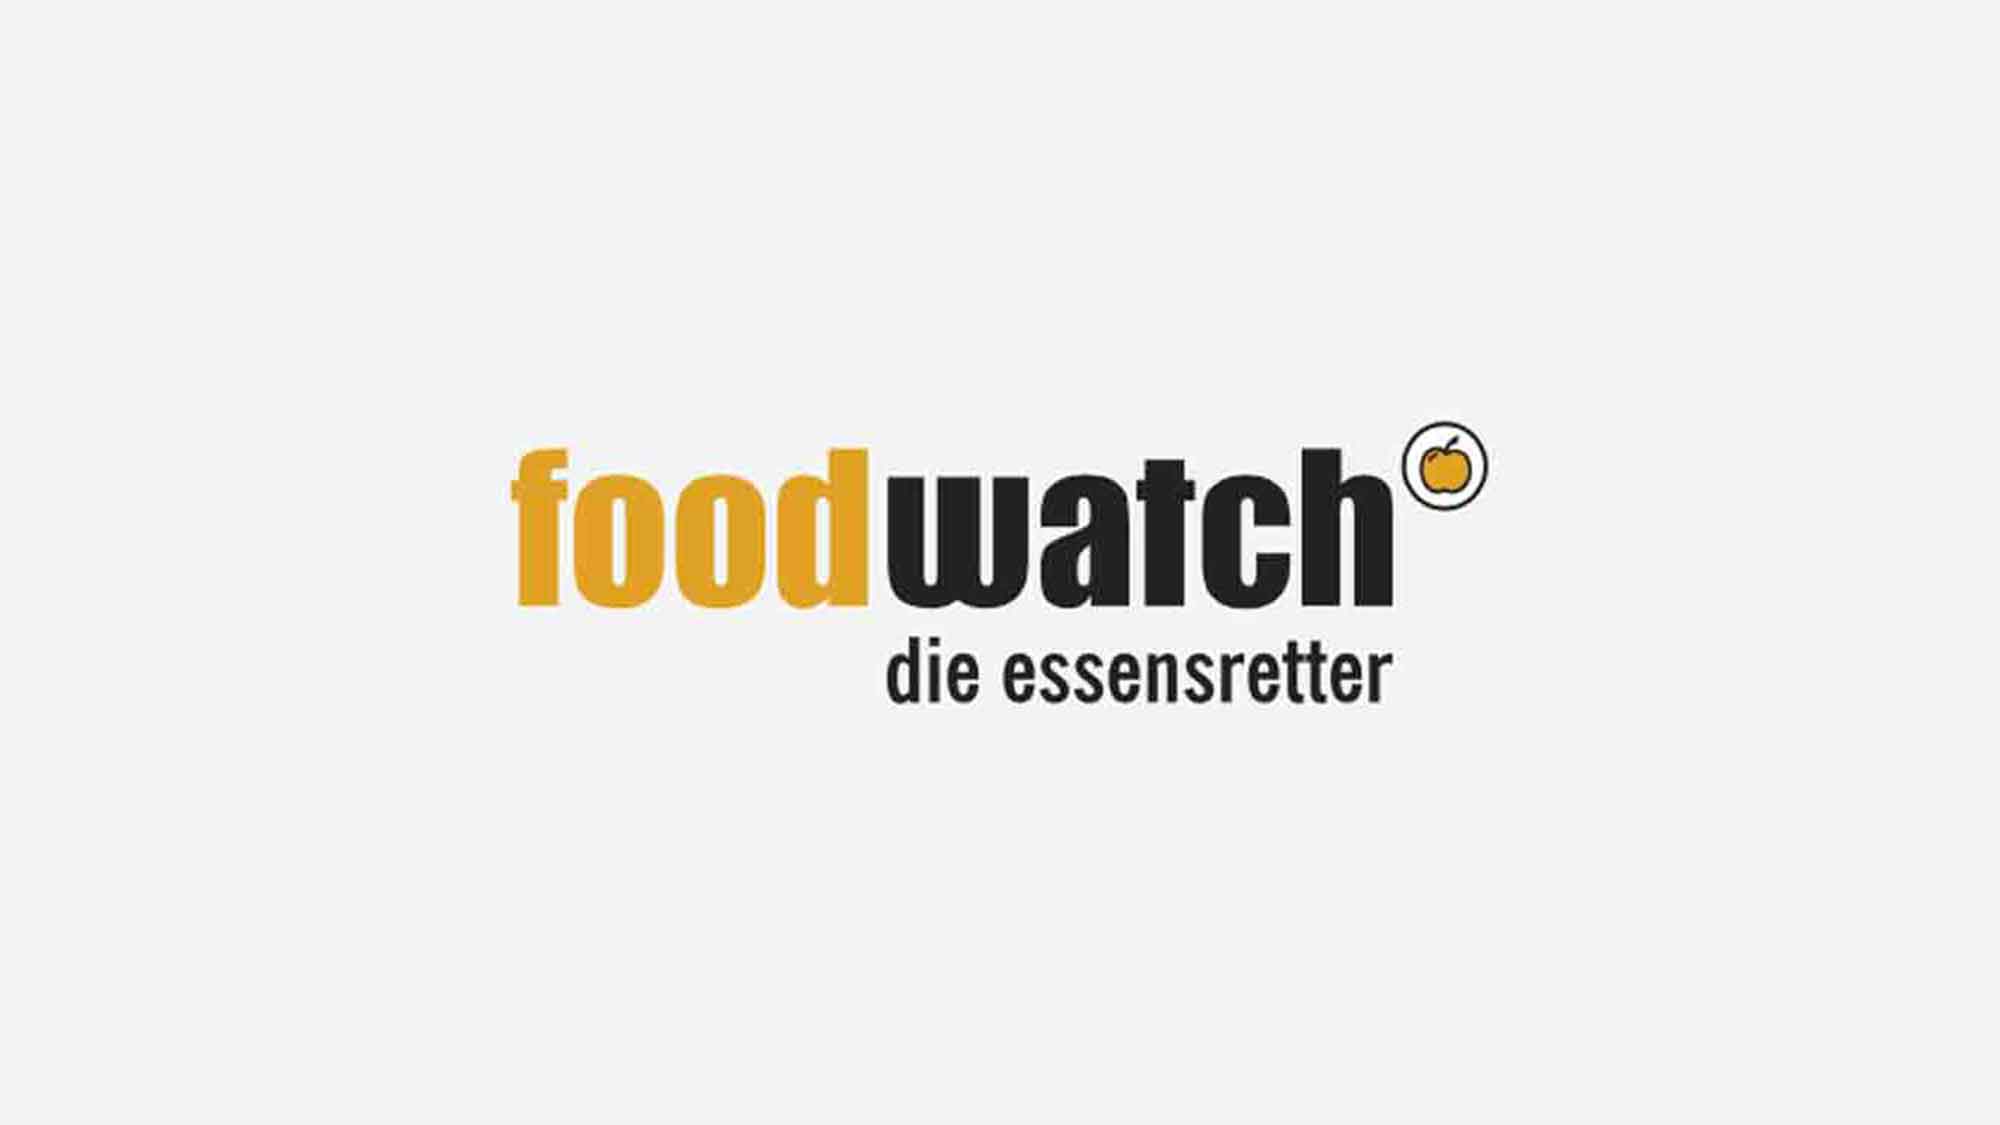 Irreführende Werbung für Nahrungsergänzungsmittel: Foodwatch mahnt Hersteller »More Nutrition« ab